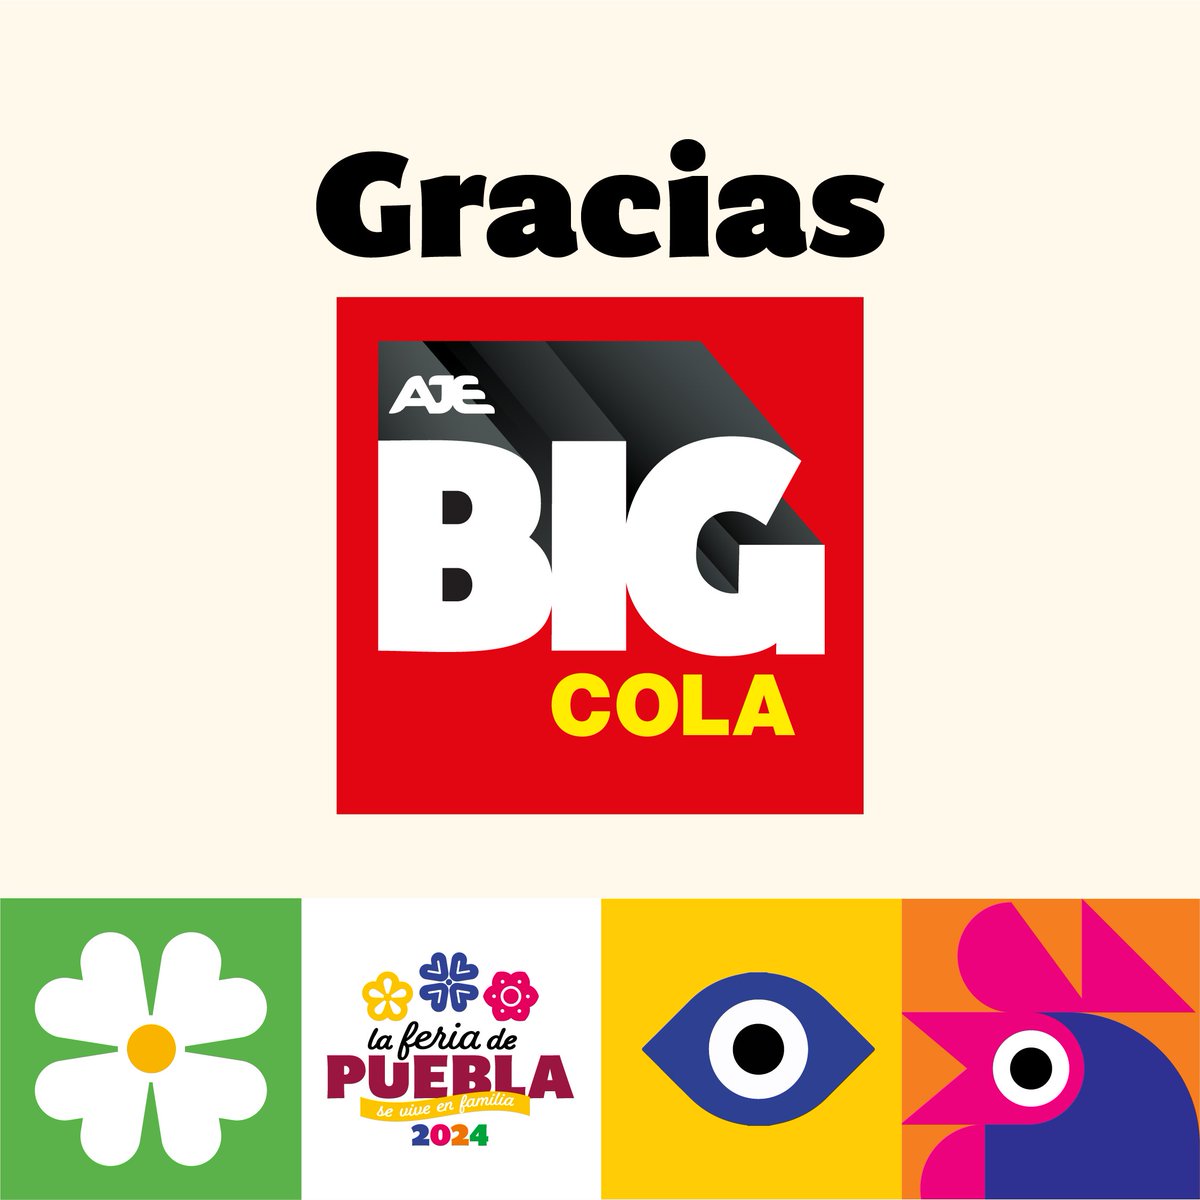 😋 Gracias Big Cola, por ser patrocinador oficial de la Feria de Puebla 2024. 🥃 ¡Juntos compartimos experiencias en grande! #FeriadePuebla2024